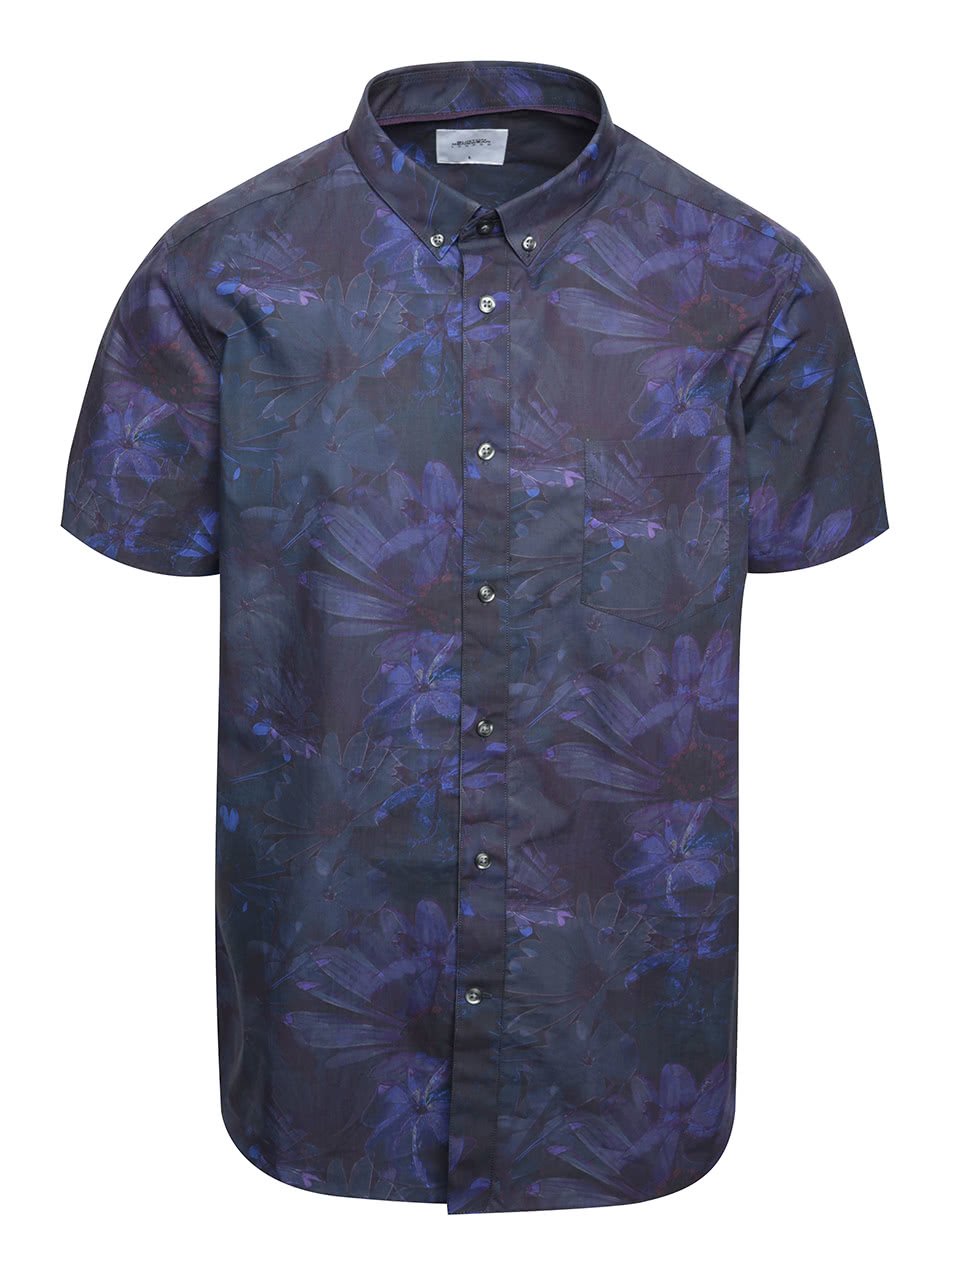 Vínovo-fialová košile s květinovým potiskem a krátkým rukávem Burton Menswear London